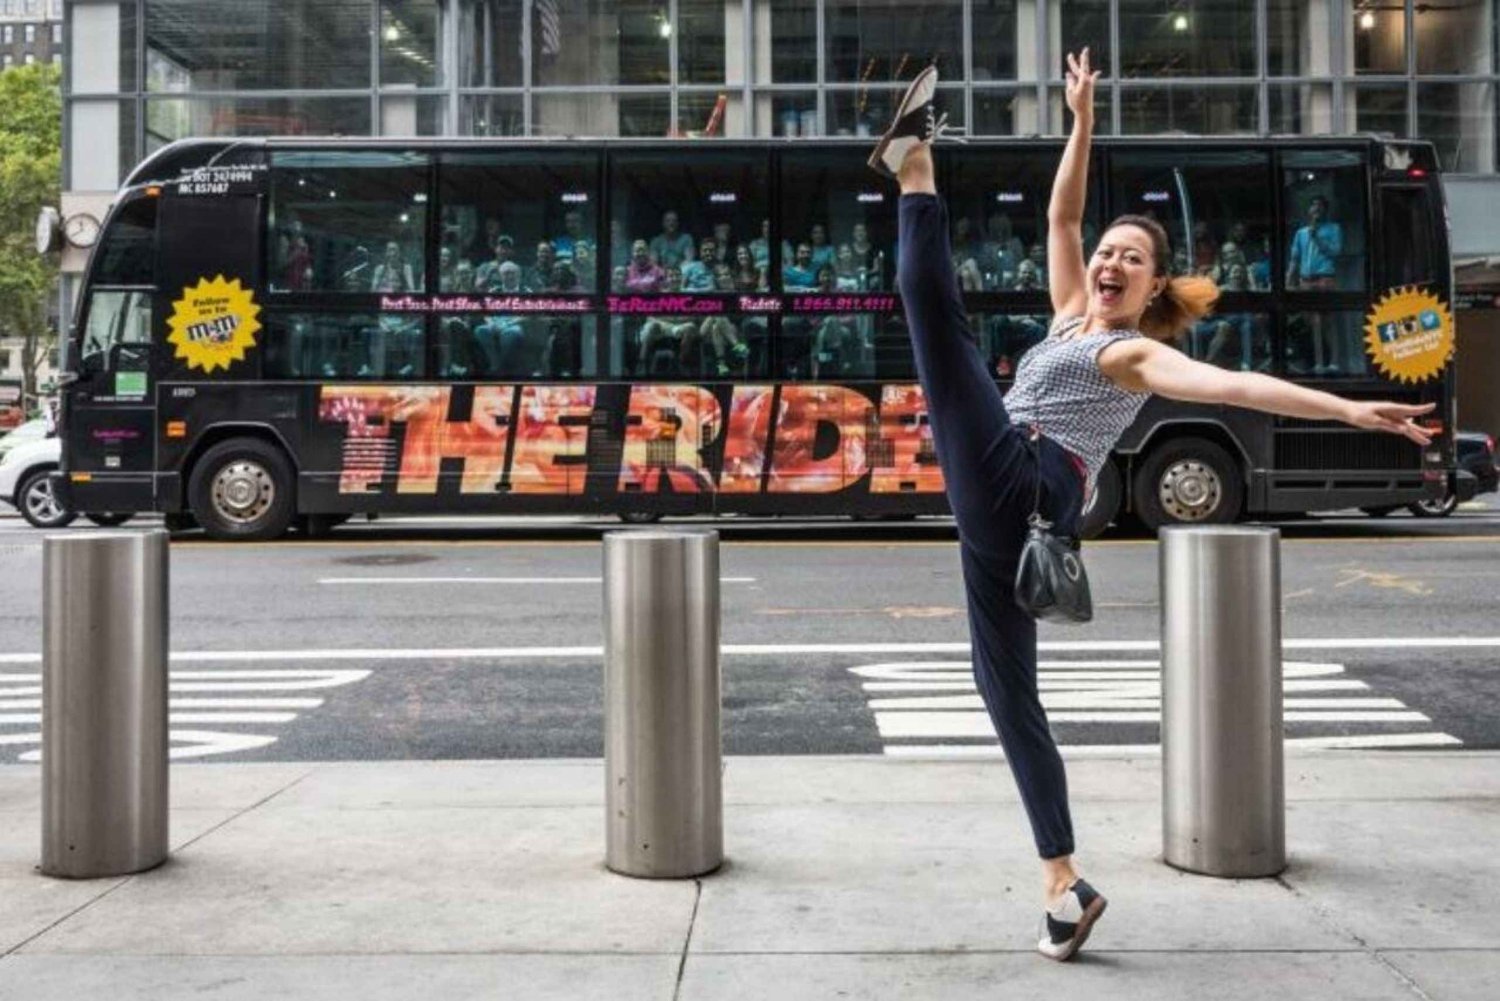 NYC: The Ride Theatre Bus & het beste van Manhattan wandeltour